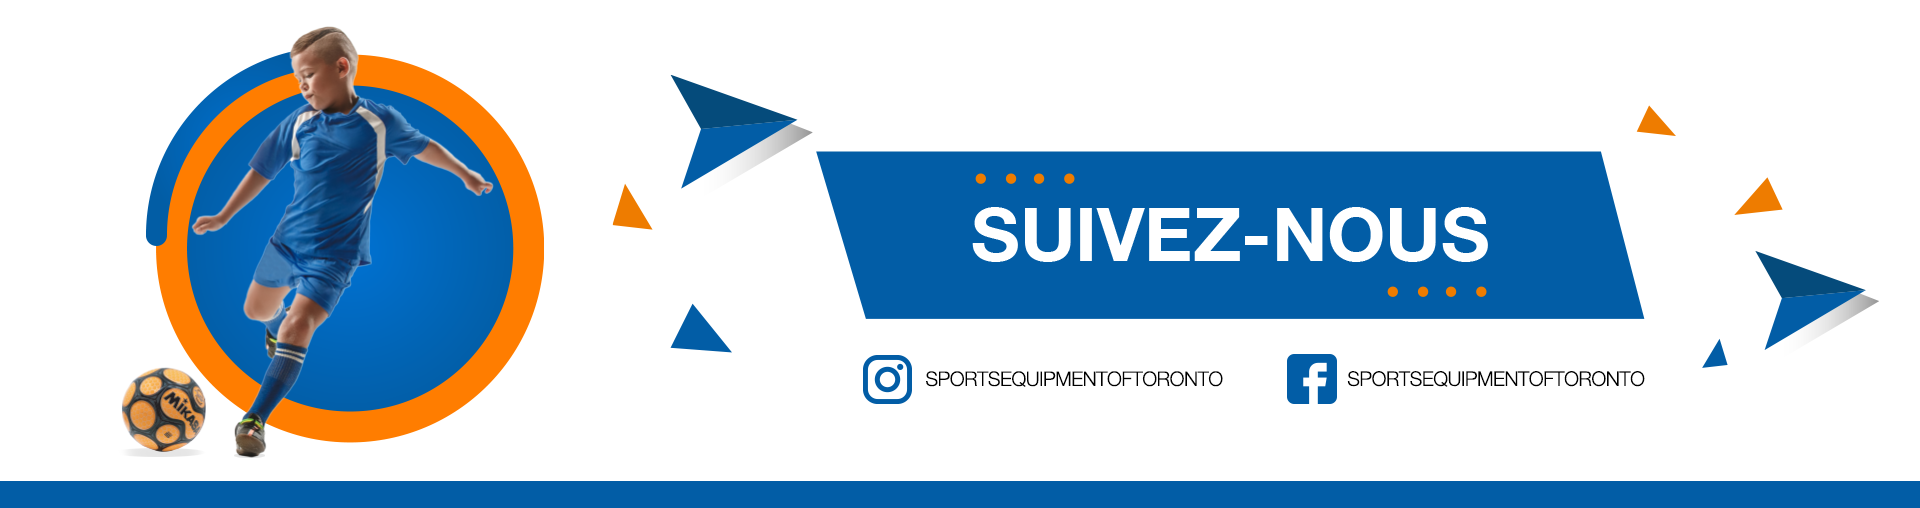 Sports Equipment of Toronto - Suivez-nous